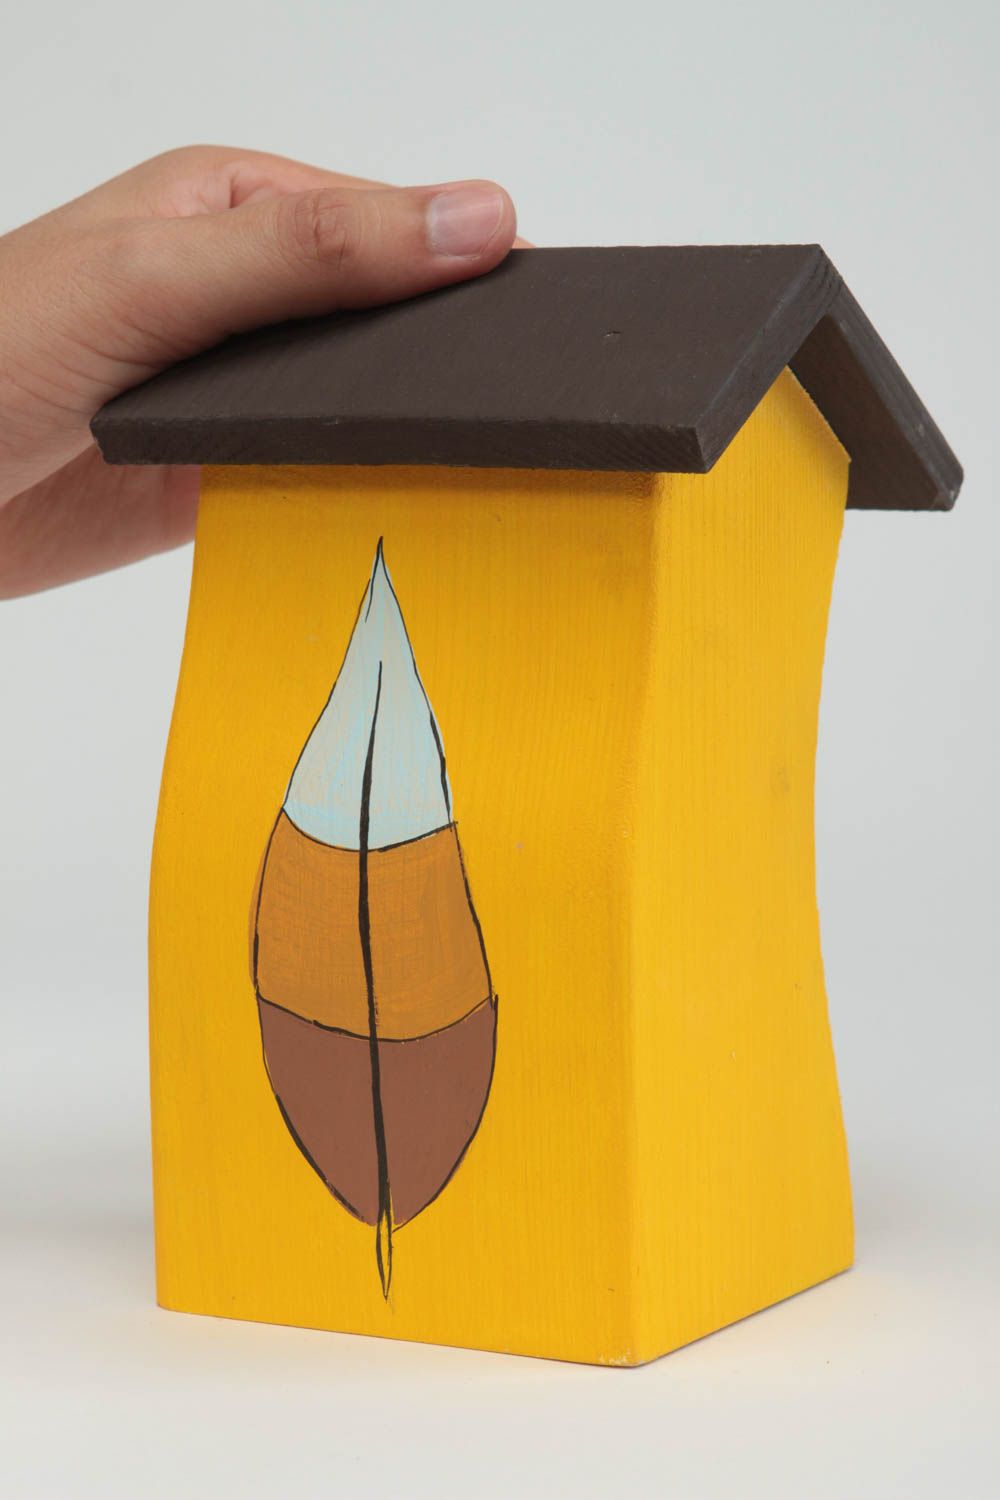 Wood sculpture wooden figurine handmade home decor housewarming gift ideas photo 5